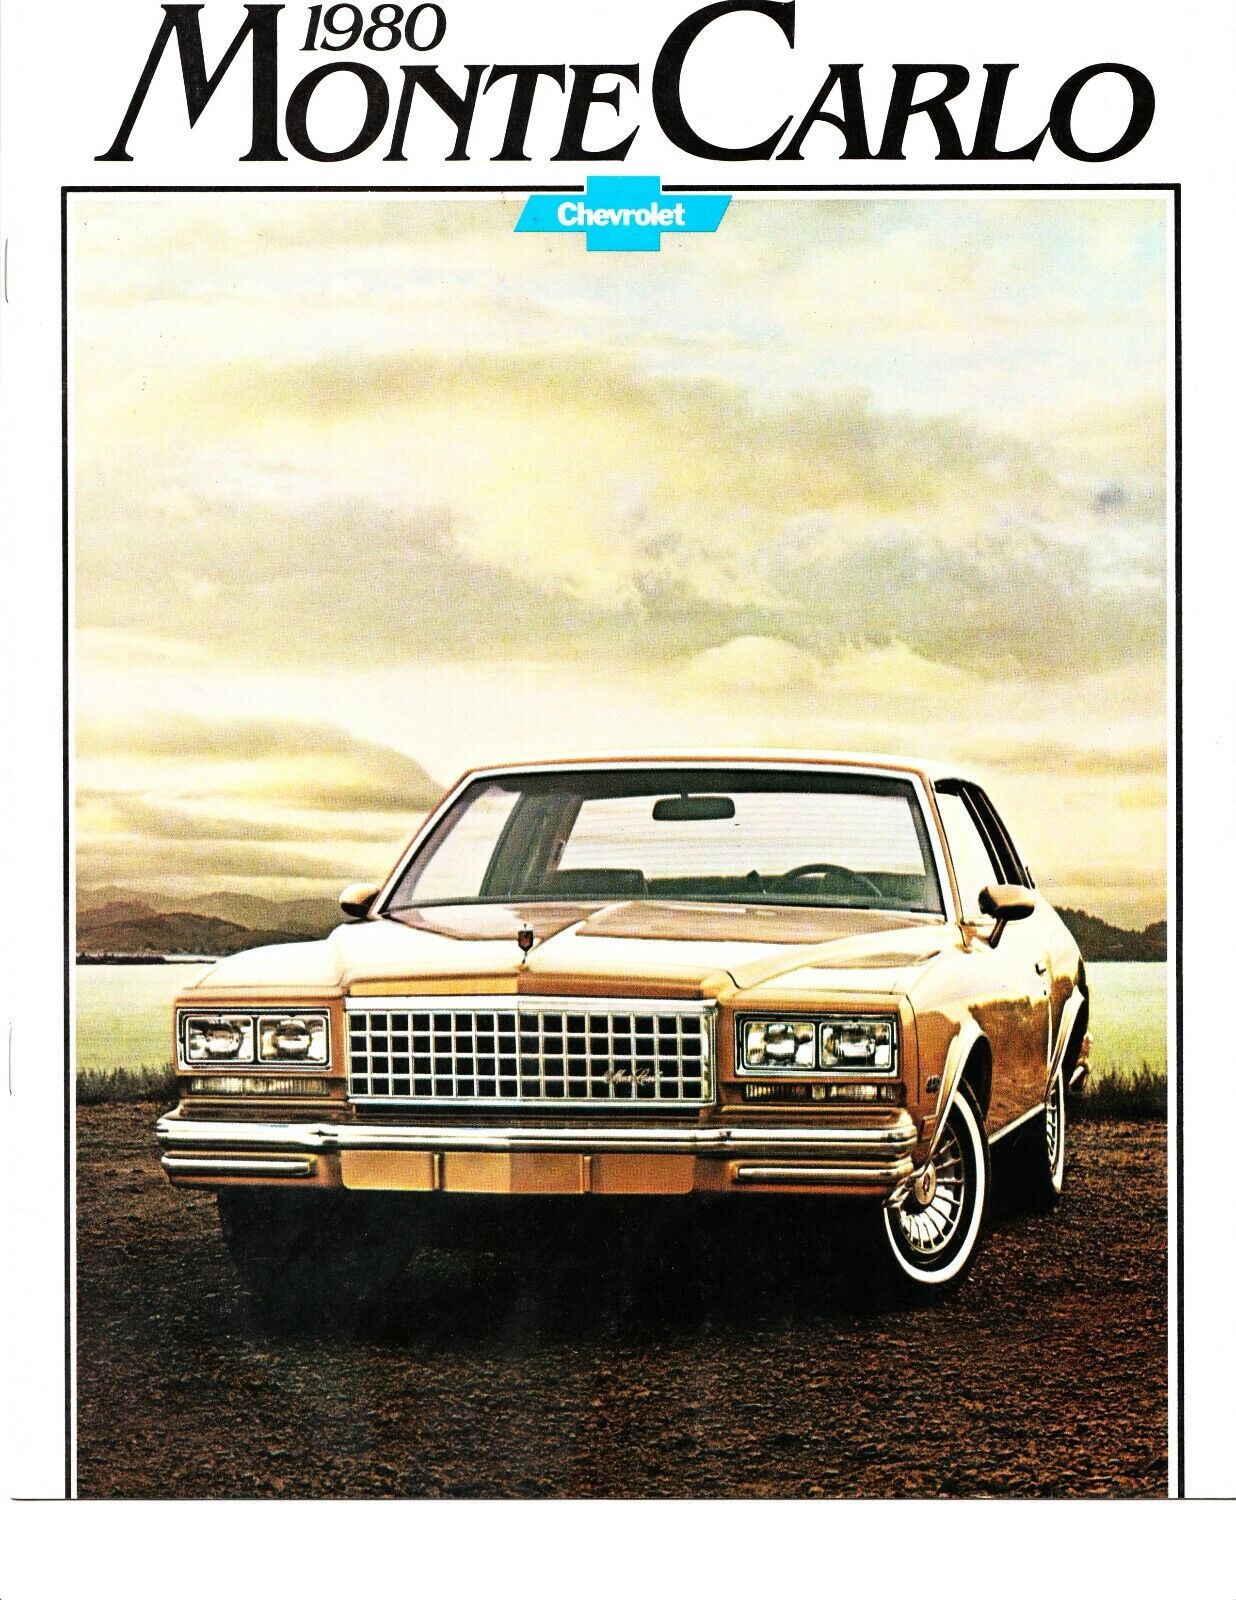 Original 1980 Monte Carlo  GM dealer sales brochure